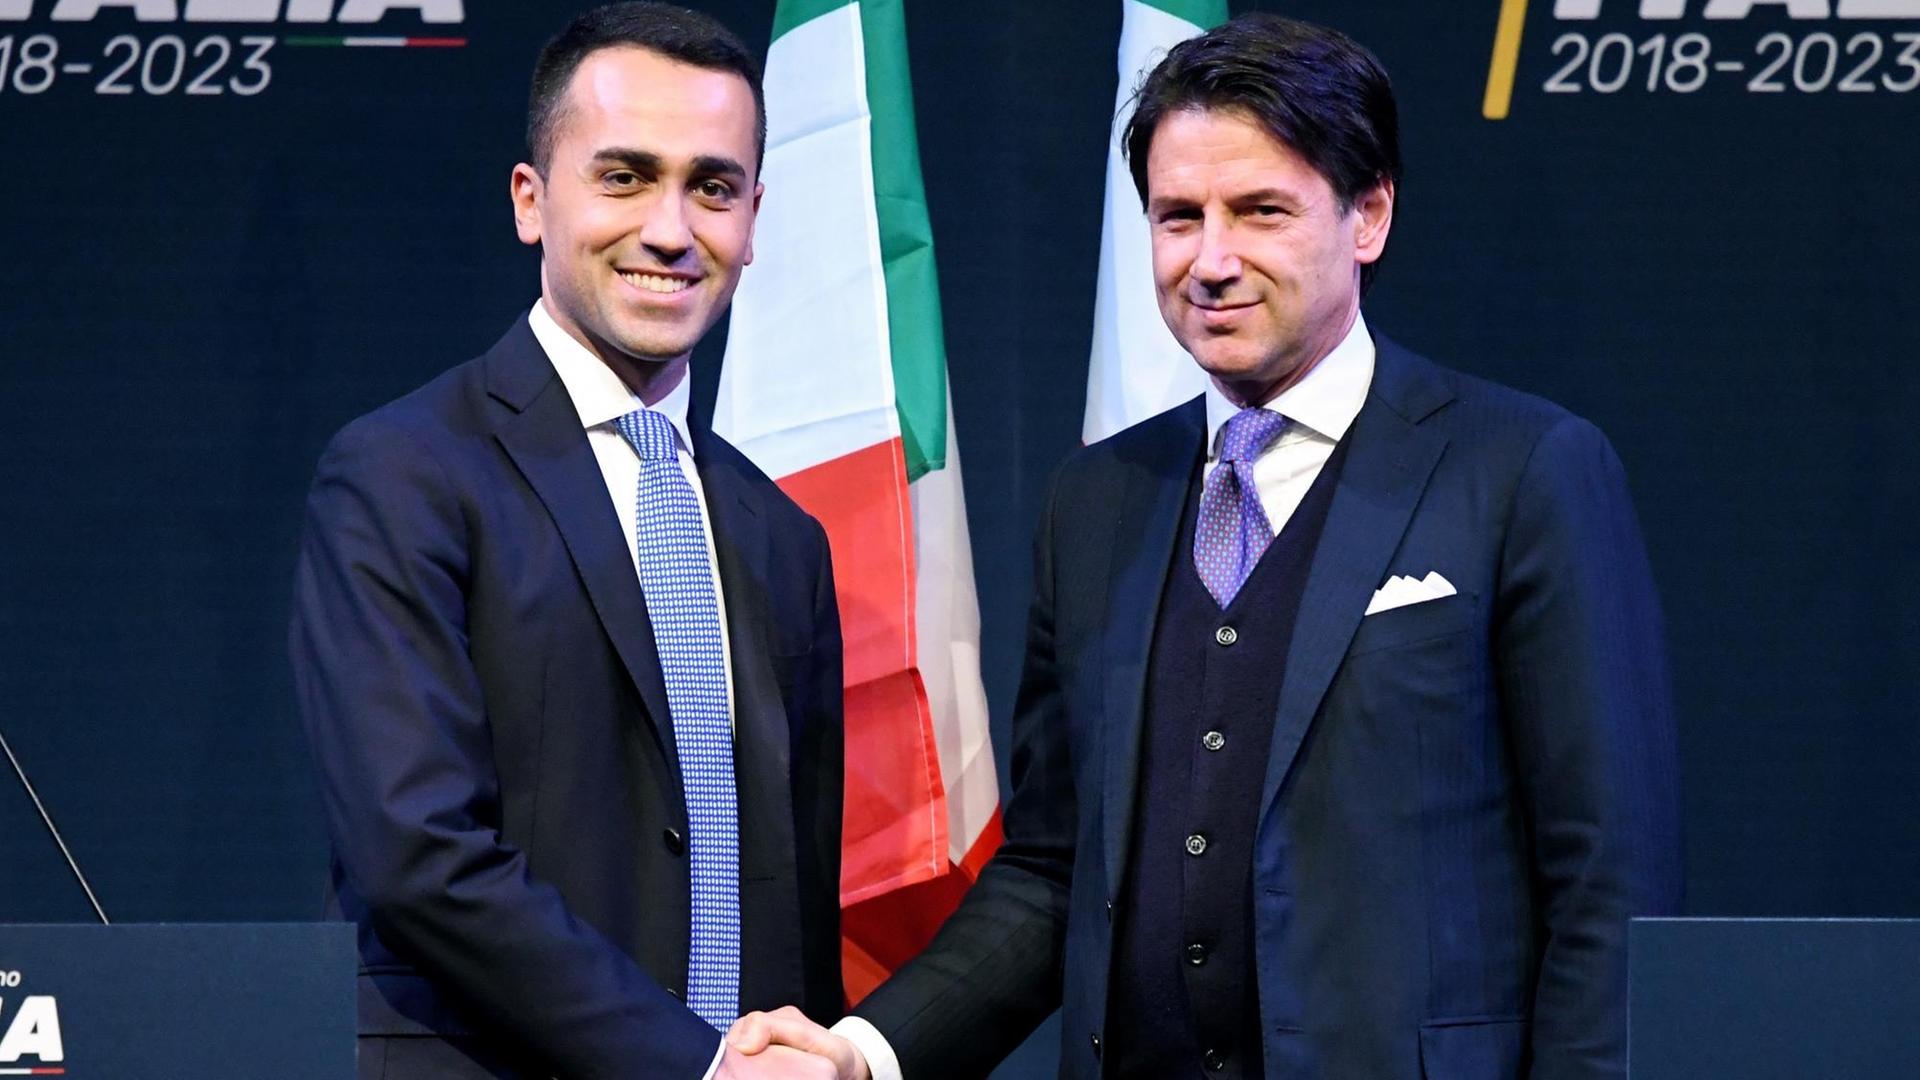 Die beiden stehen vor einer schwarzen Wand mit zwei italienischen Fahnen und schütteln sich lächelnd für die Fotografen die Hände.